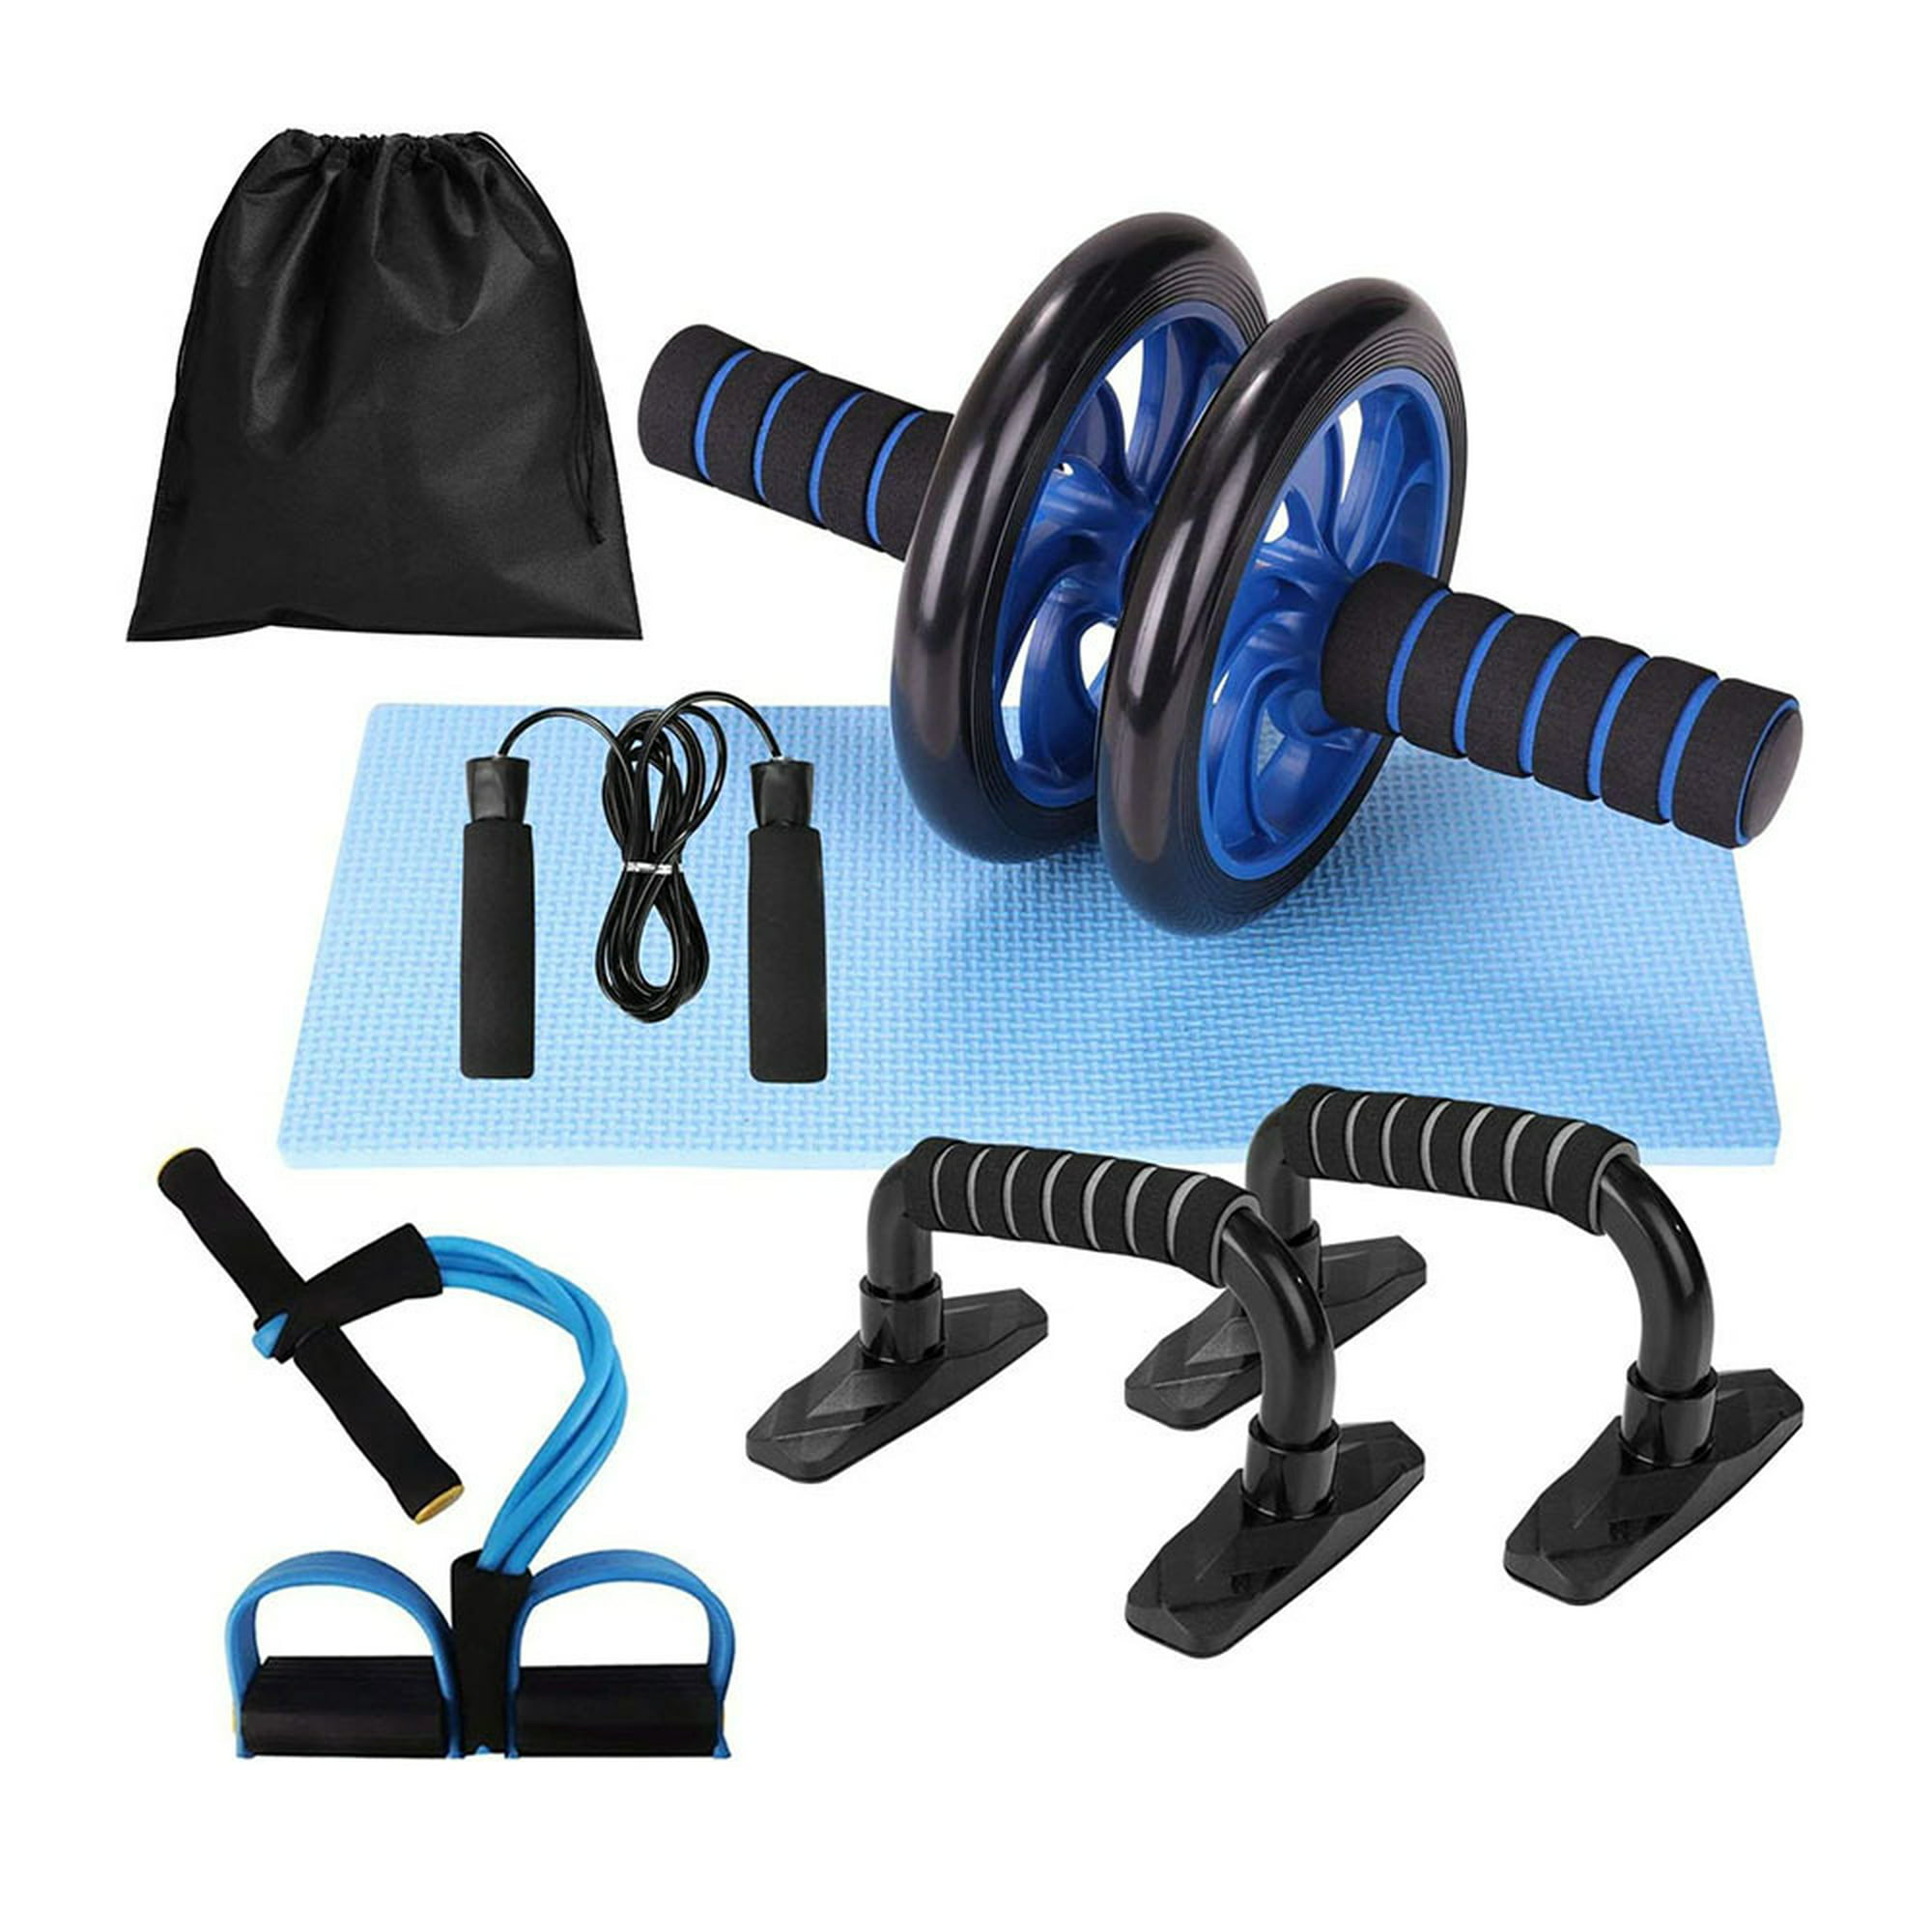  Gaiam Kit de gimnasio en casa para hombres y mujeres, incluye  rueda abdominal, cuerda para saltar, barras de flexión, banda de  resistencia con asas y guía de ejercicio de cortesía, para